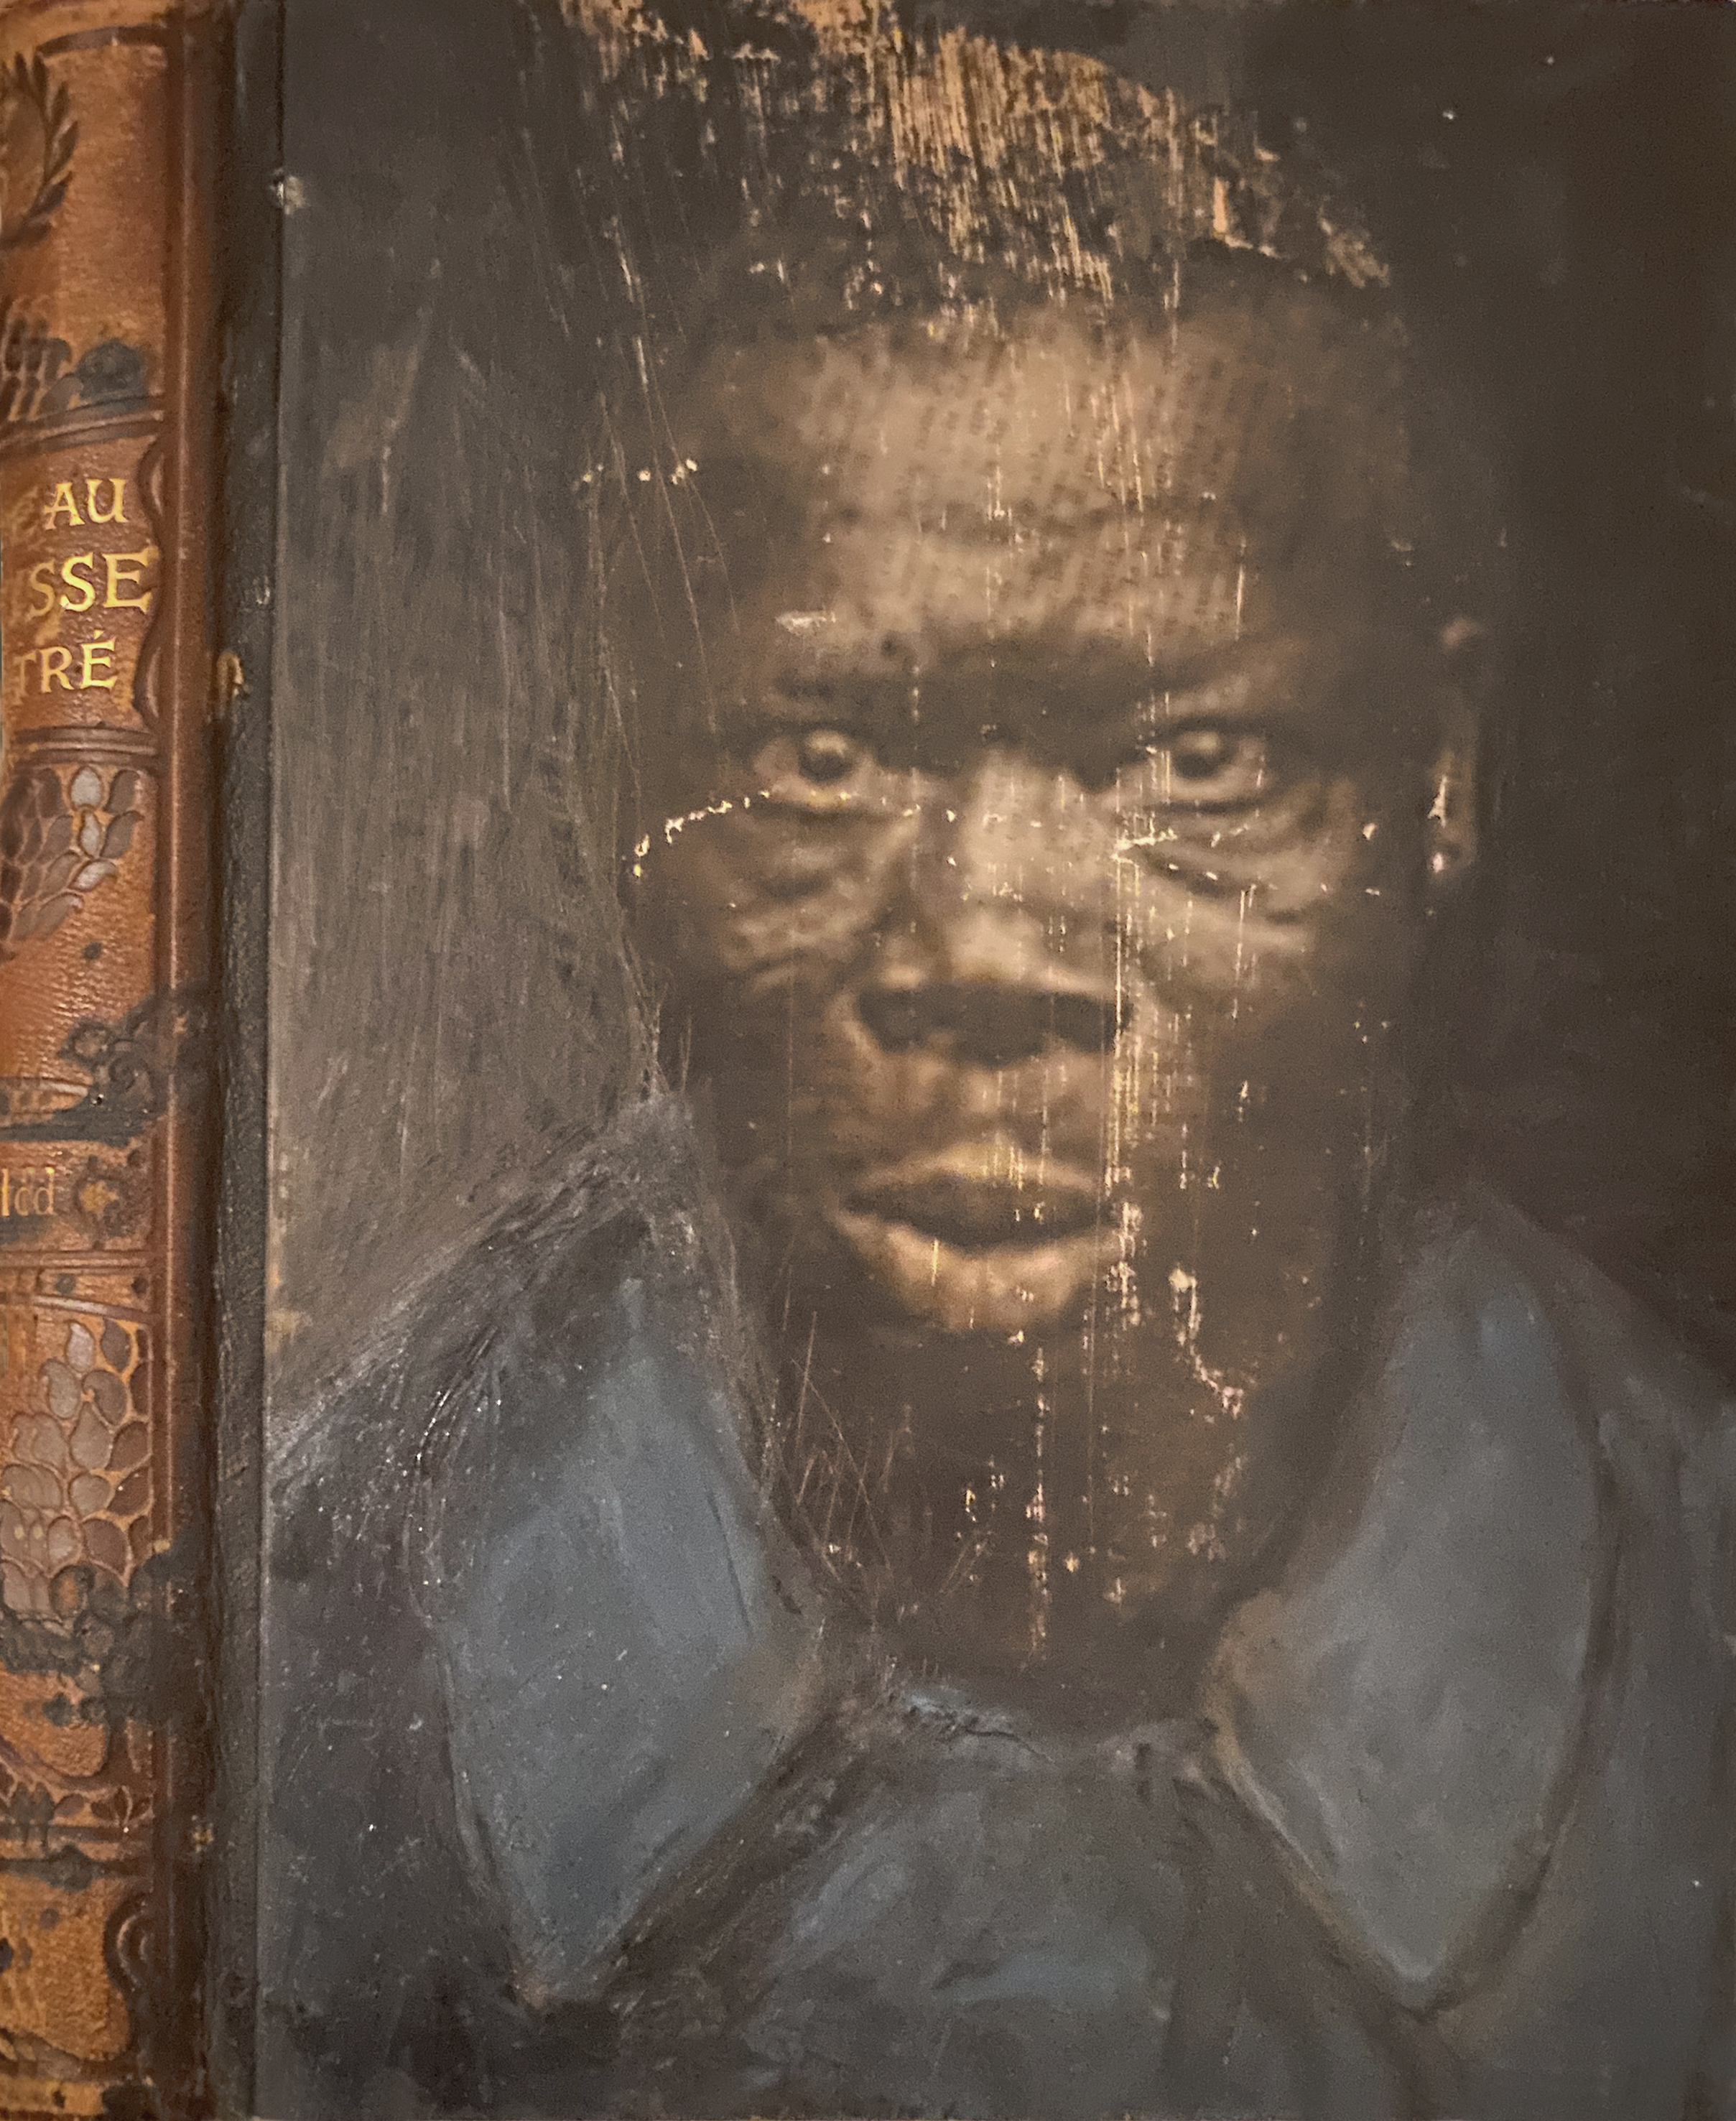 tirailleur sénégalais, photo peinte sur un livre